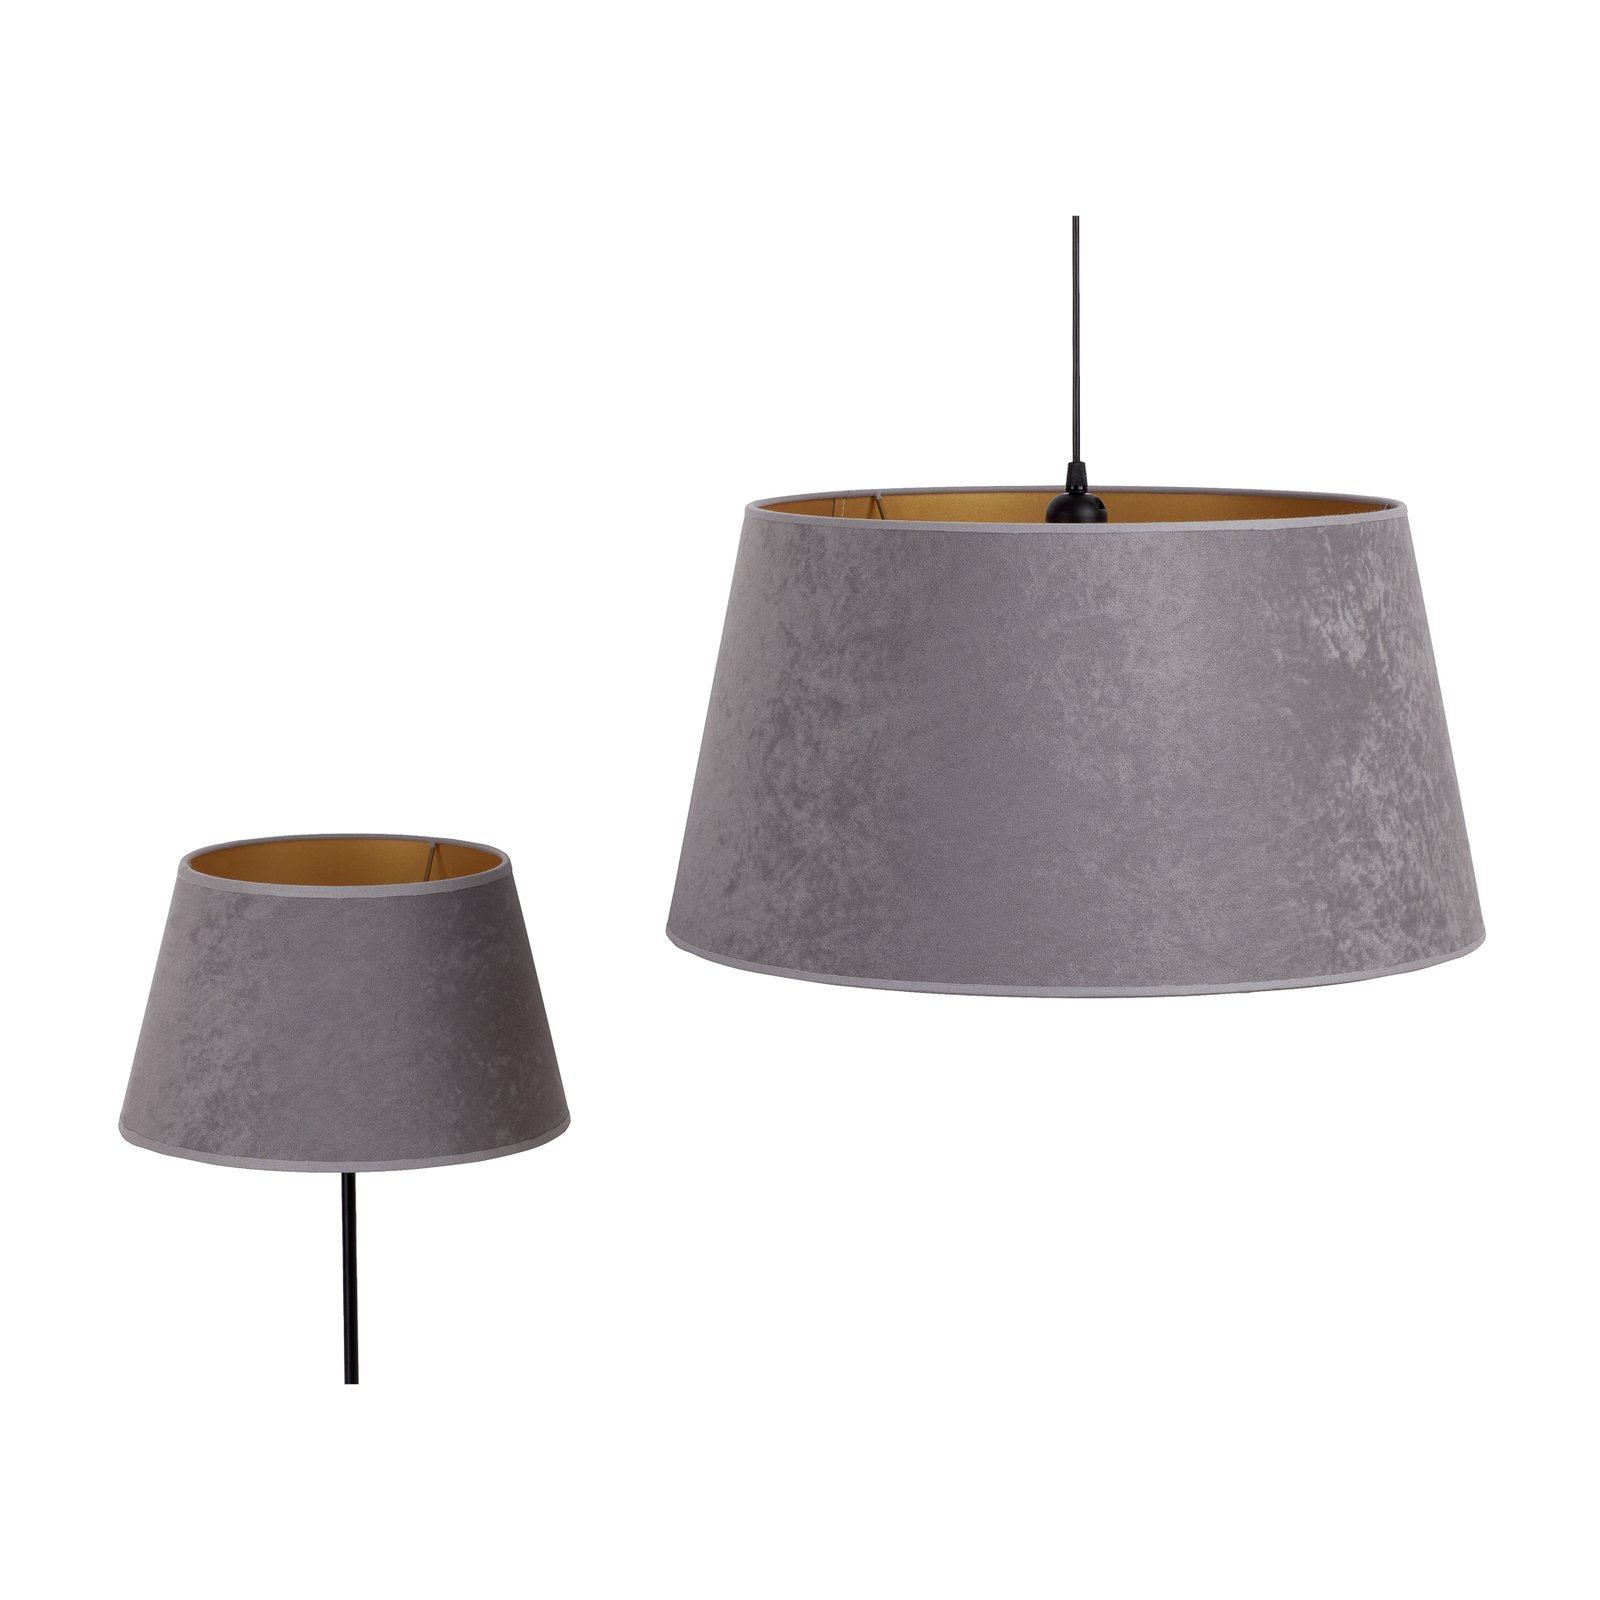 Cone lampeskærm, højde 18 cm, grå/guld